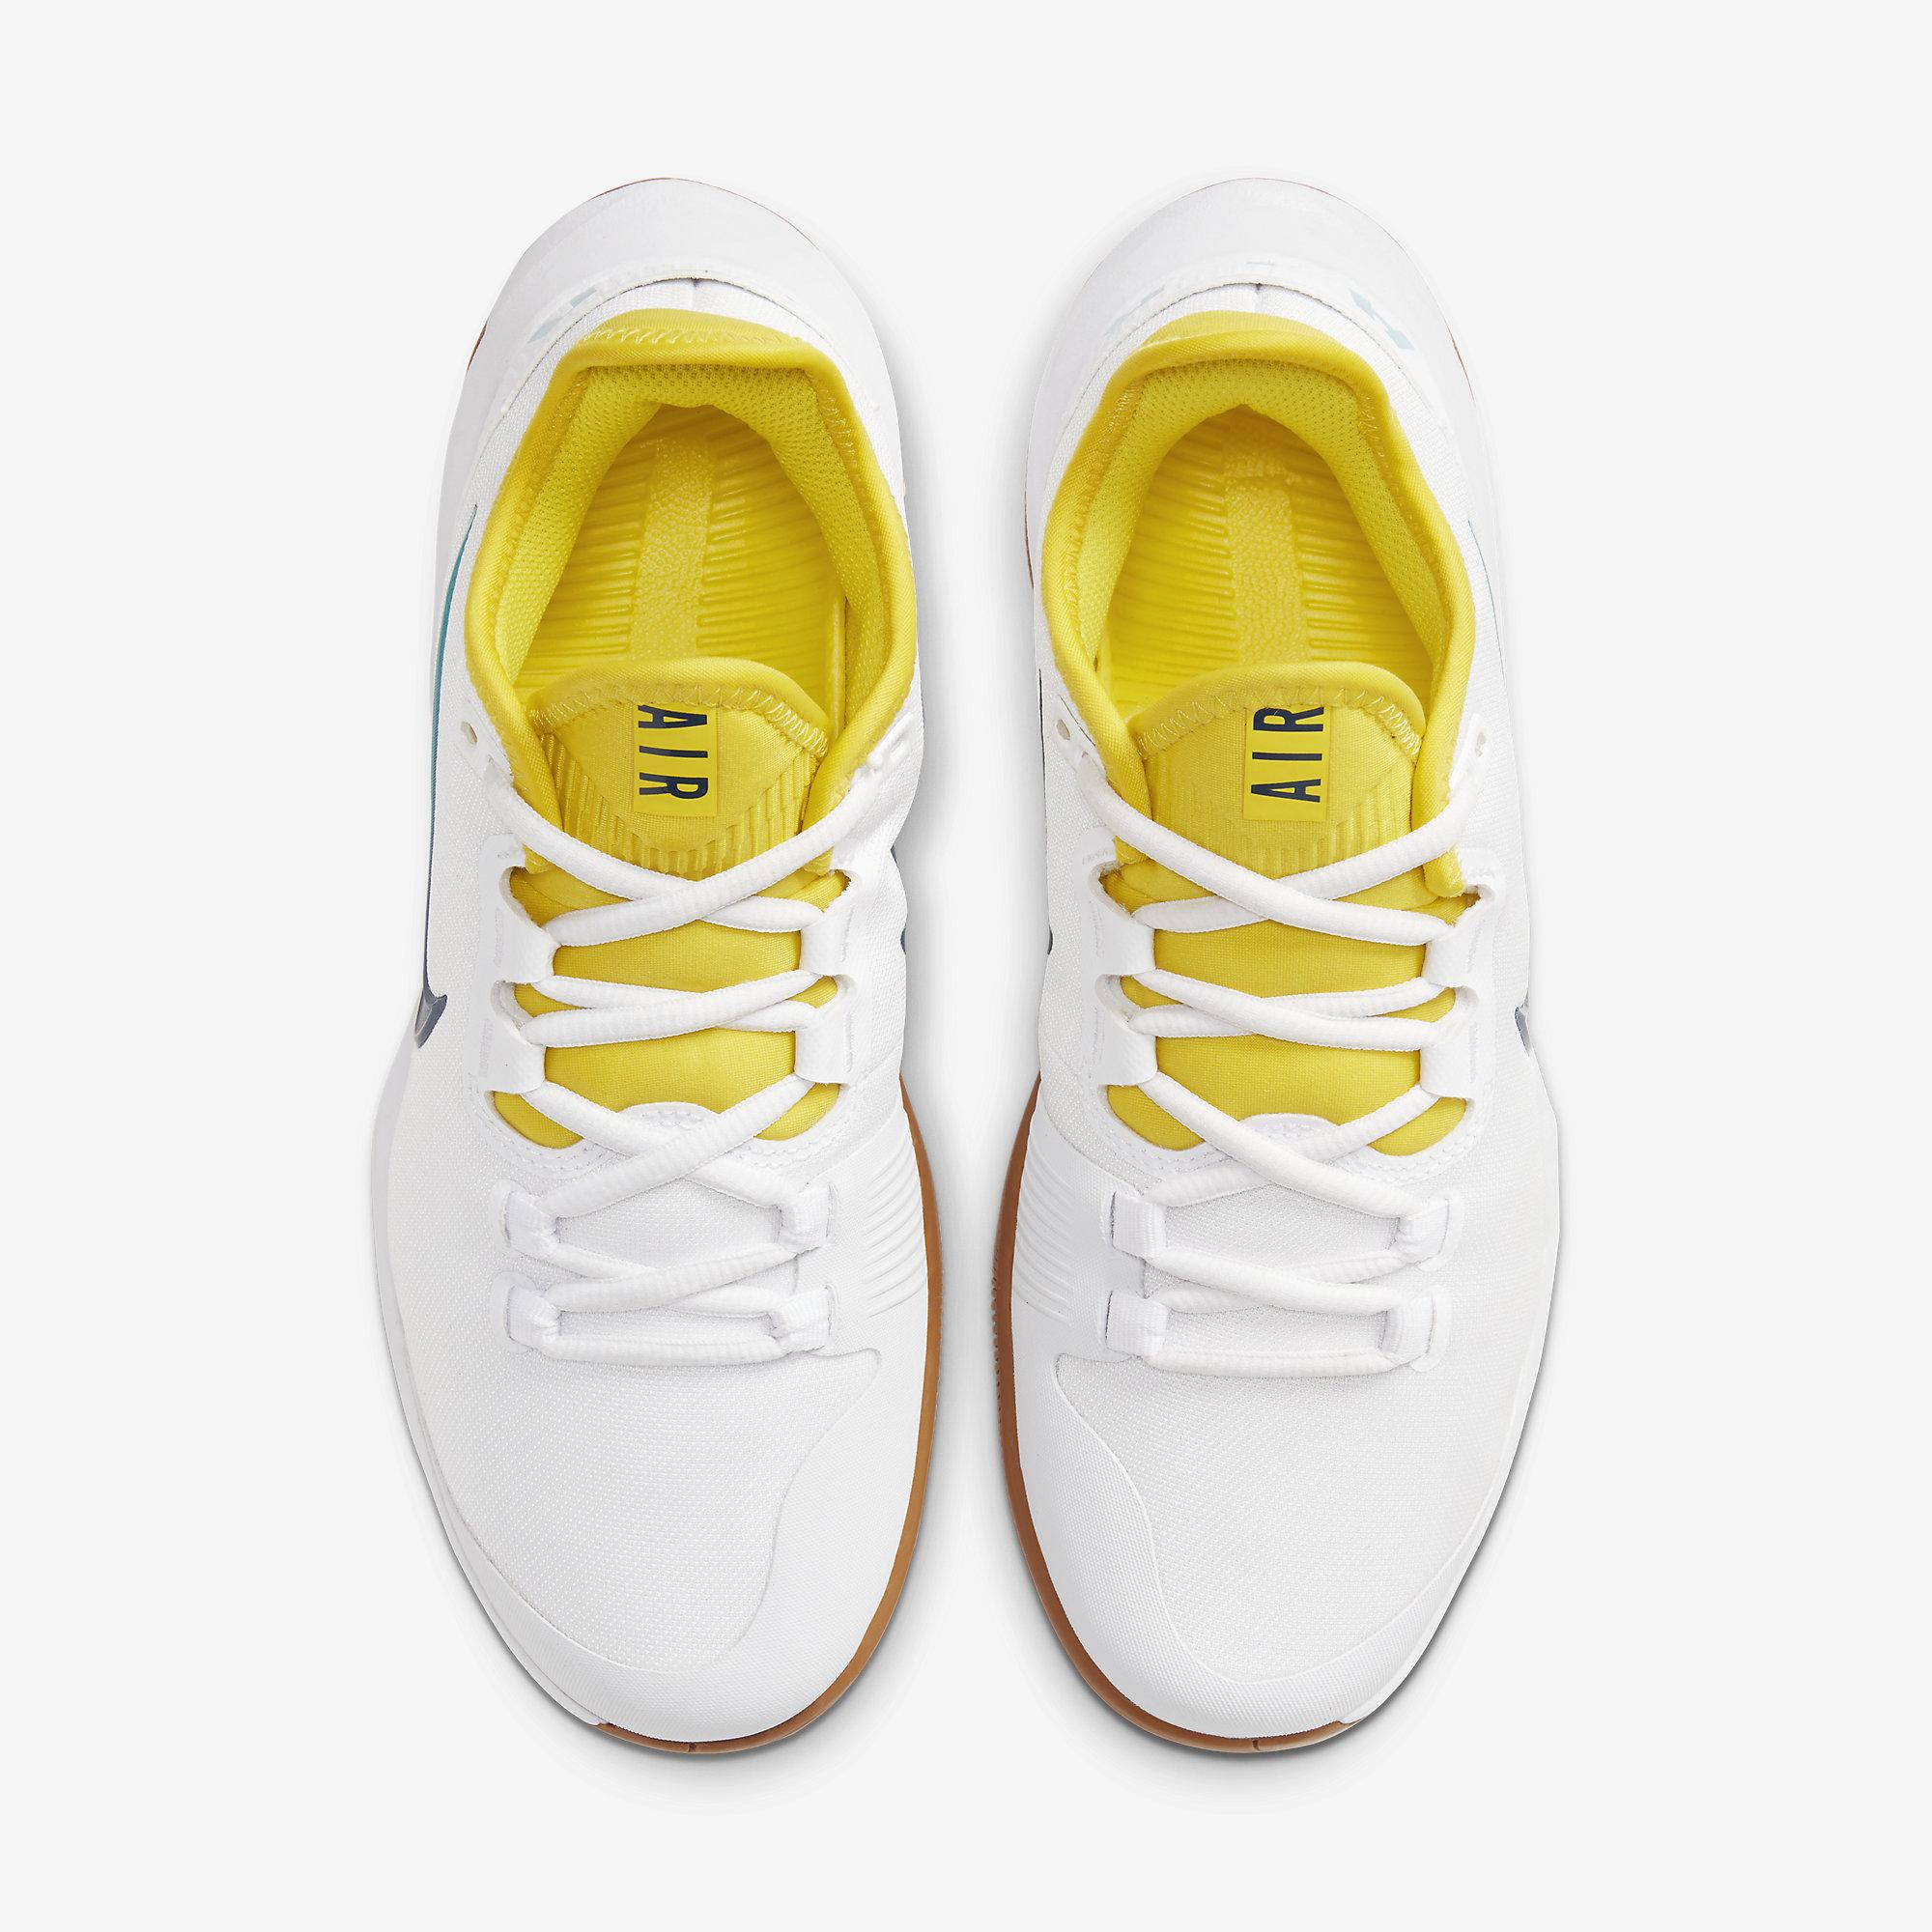 yellow nike tennis shoes